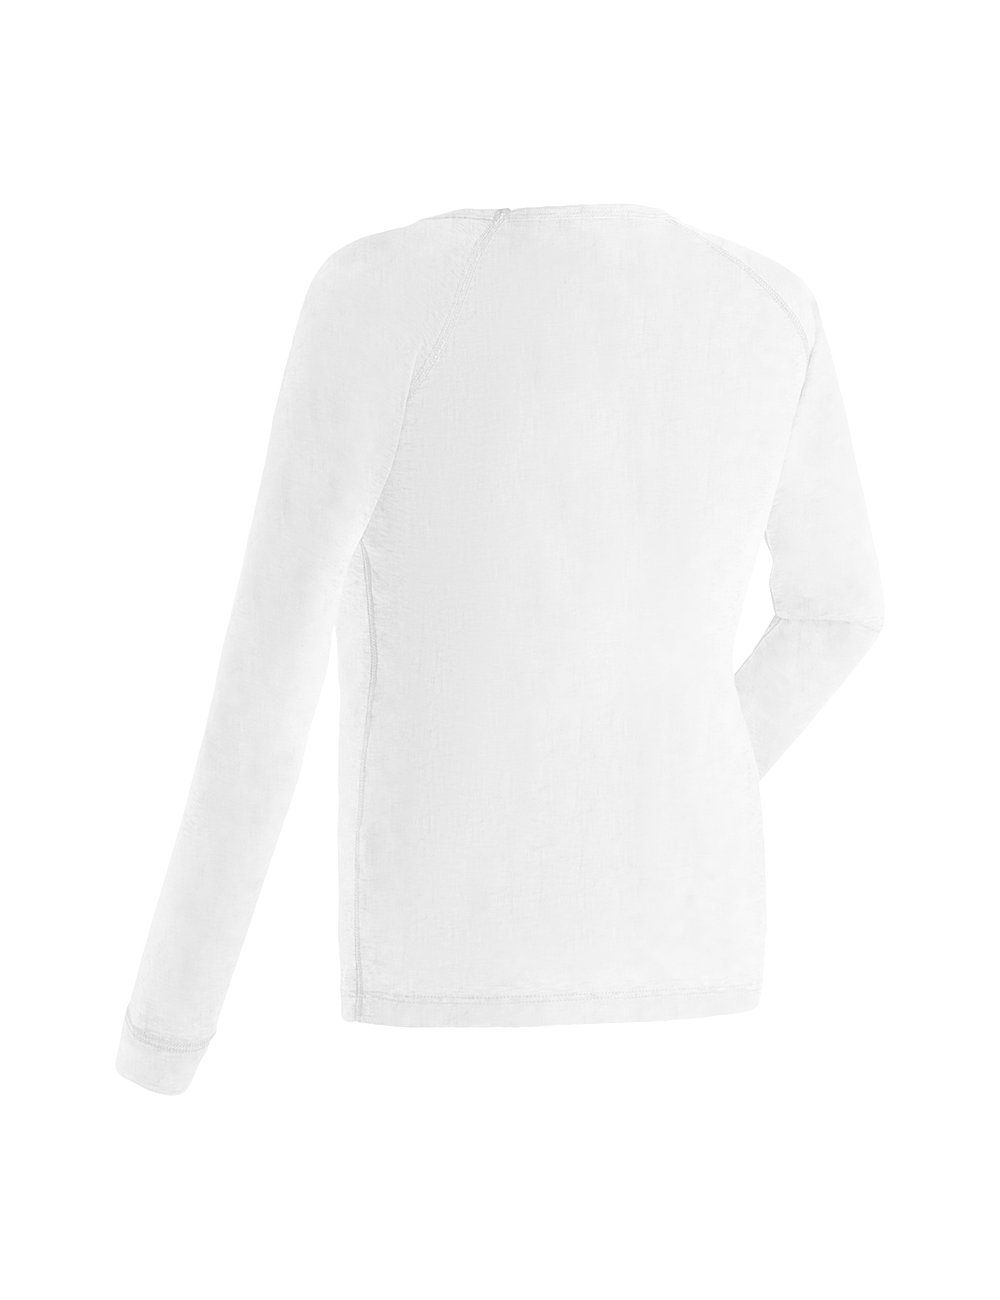 weiß Schnelltrocknende, atmungsaktive Sports Kim Hose & Maier Funktionswäsche Shirt